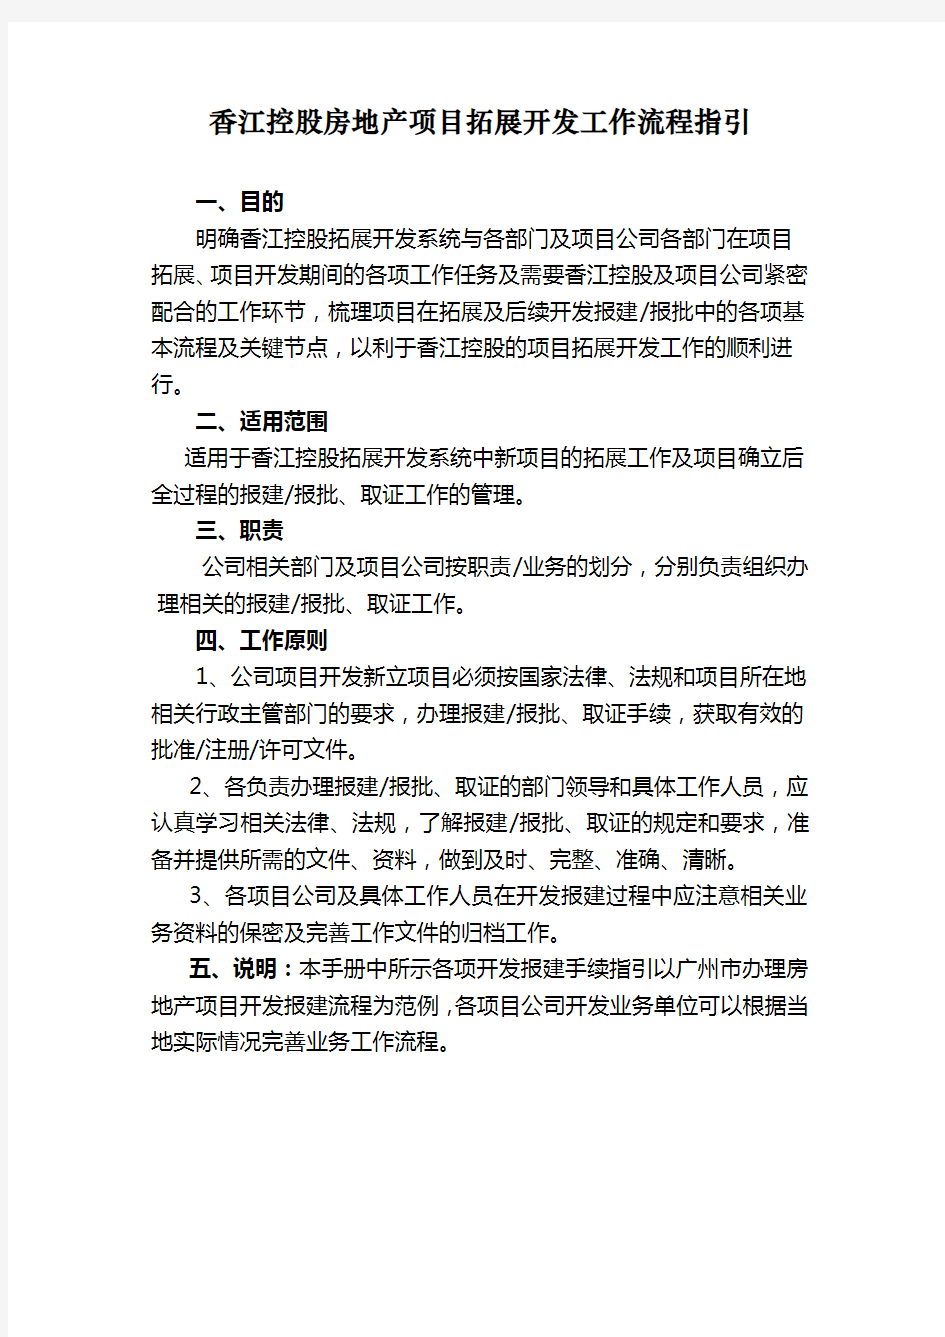 香江控股房地产项目拓展开发工作流程指引11342432031